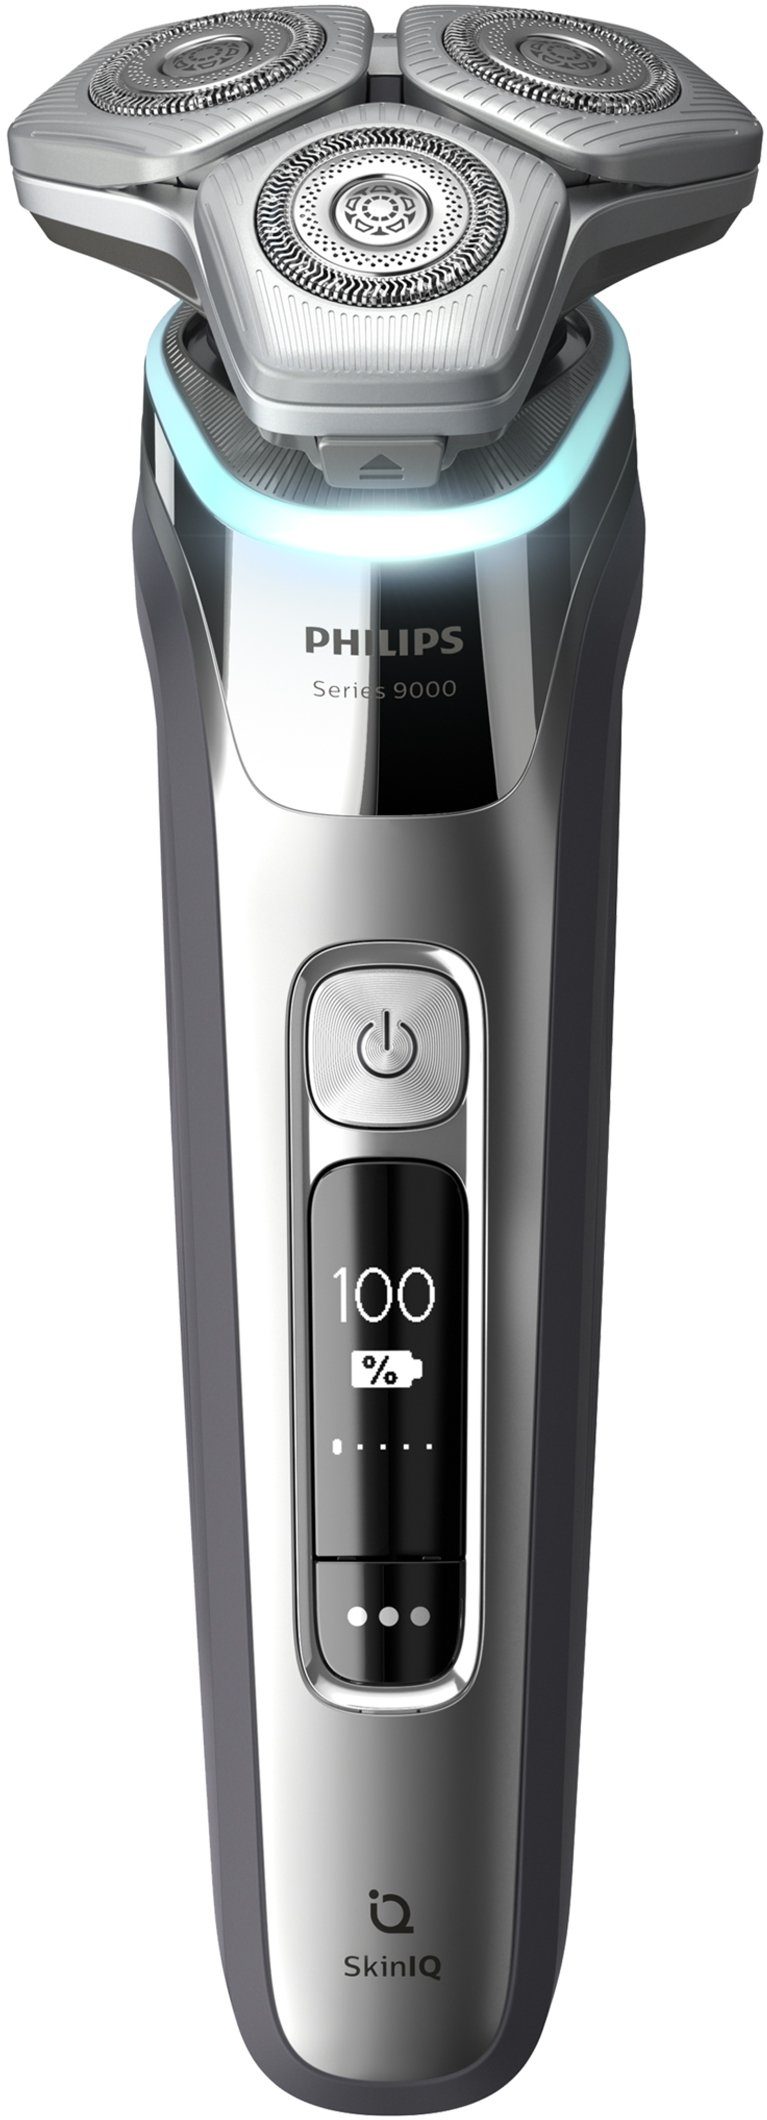 Ladestation Skin Etui Technologie, Elektrorasierer 9000 Philips series und Shaver S9985/35, IQ inkl. mit